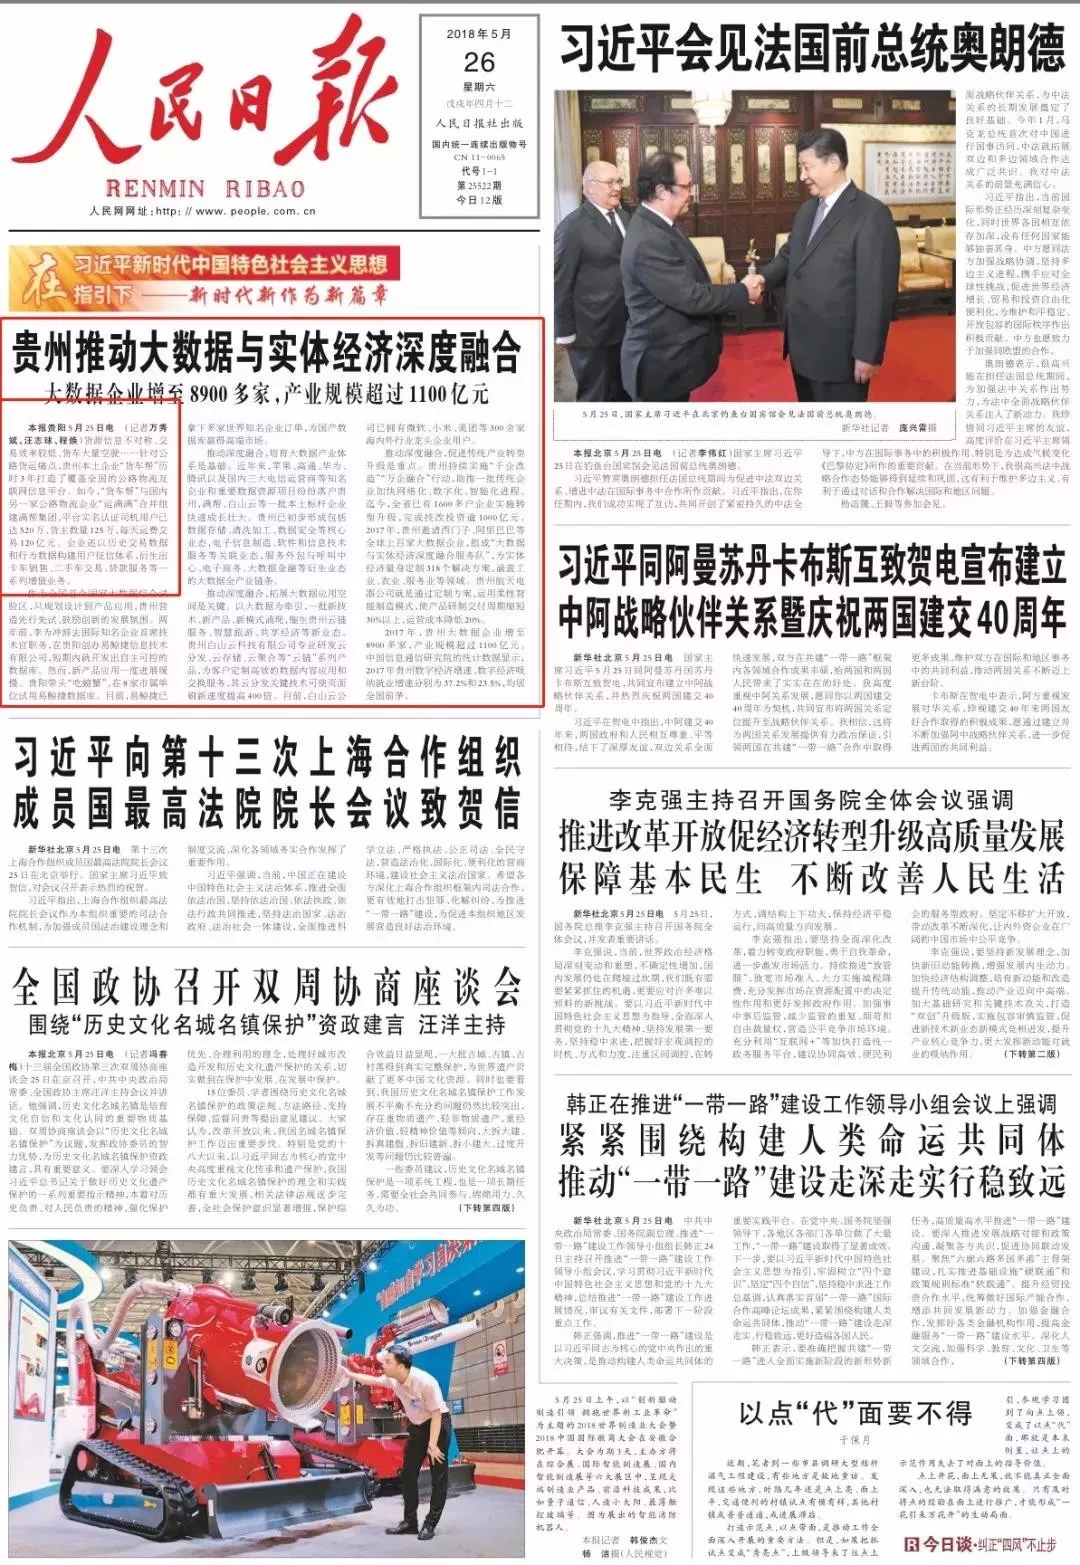 《人民日报》三赞货车帮 促进中国物流业降本增效